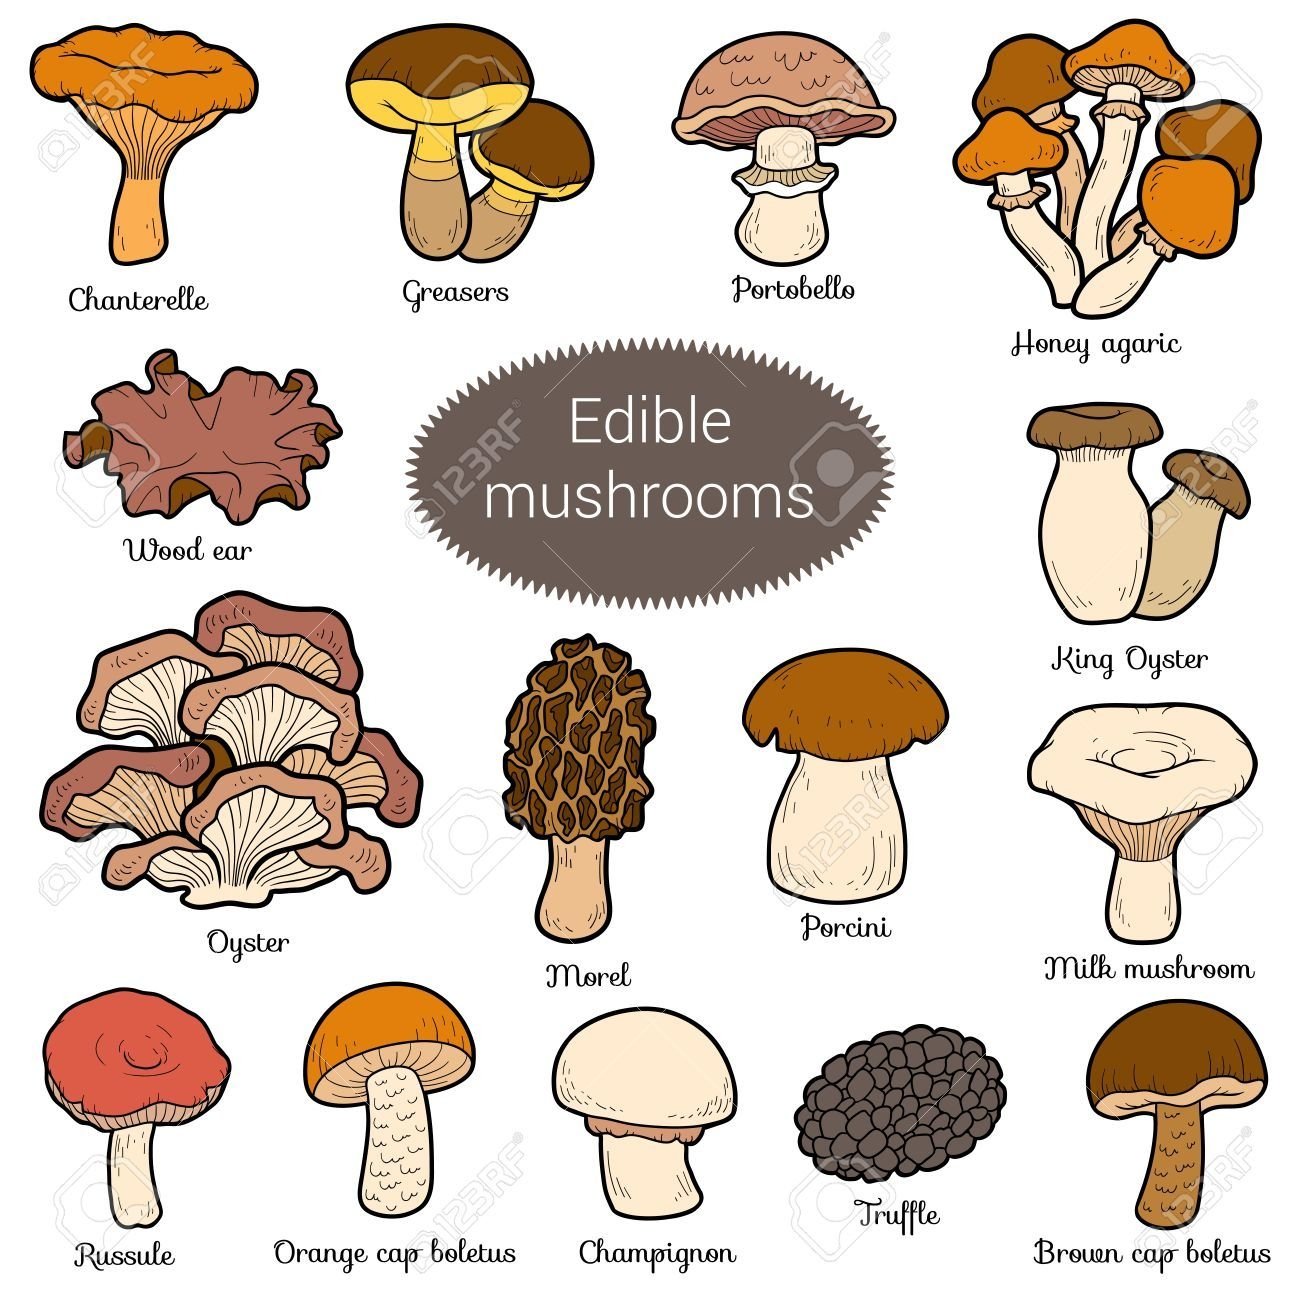 Съедобные и несъедобные грибы в картинках